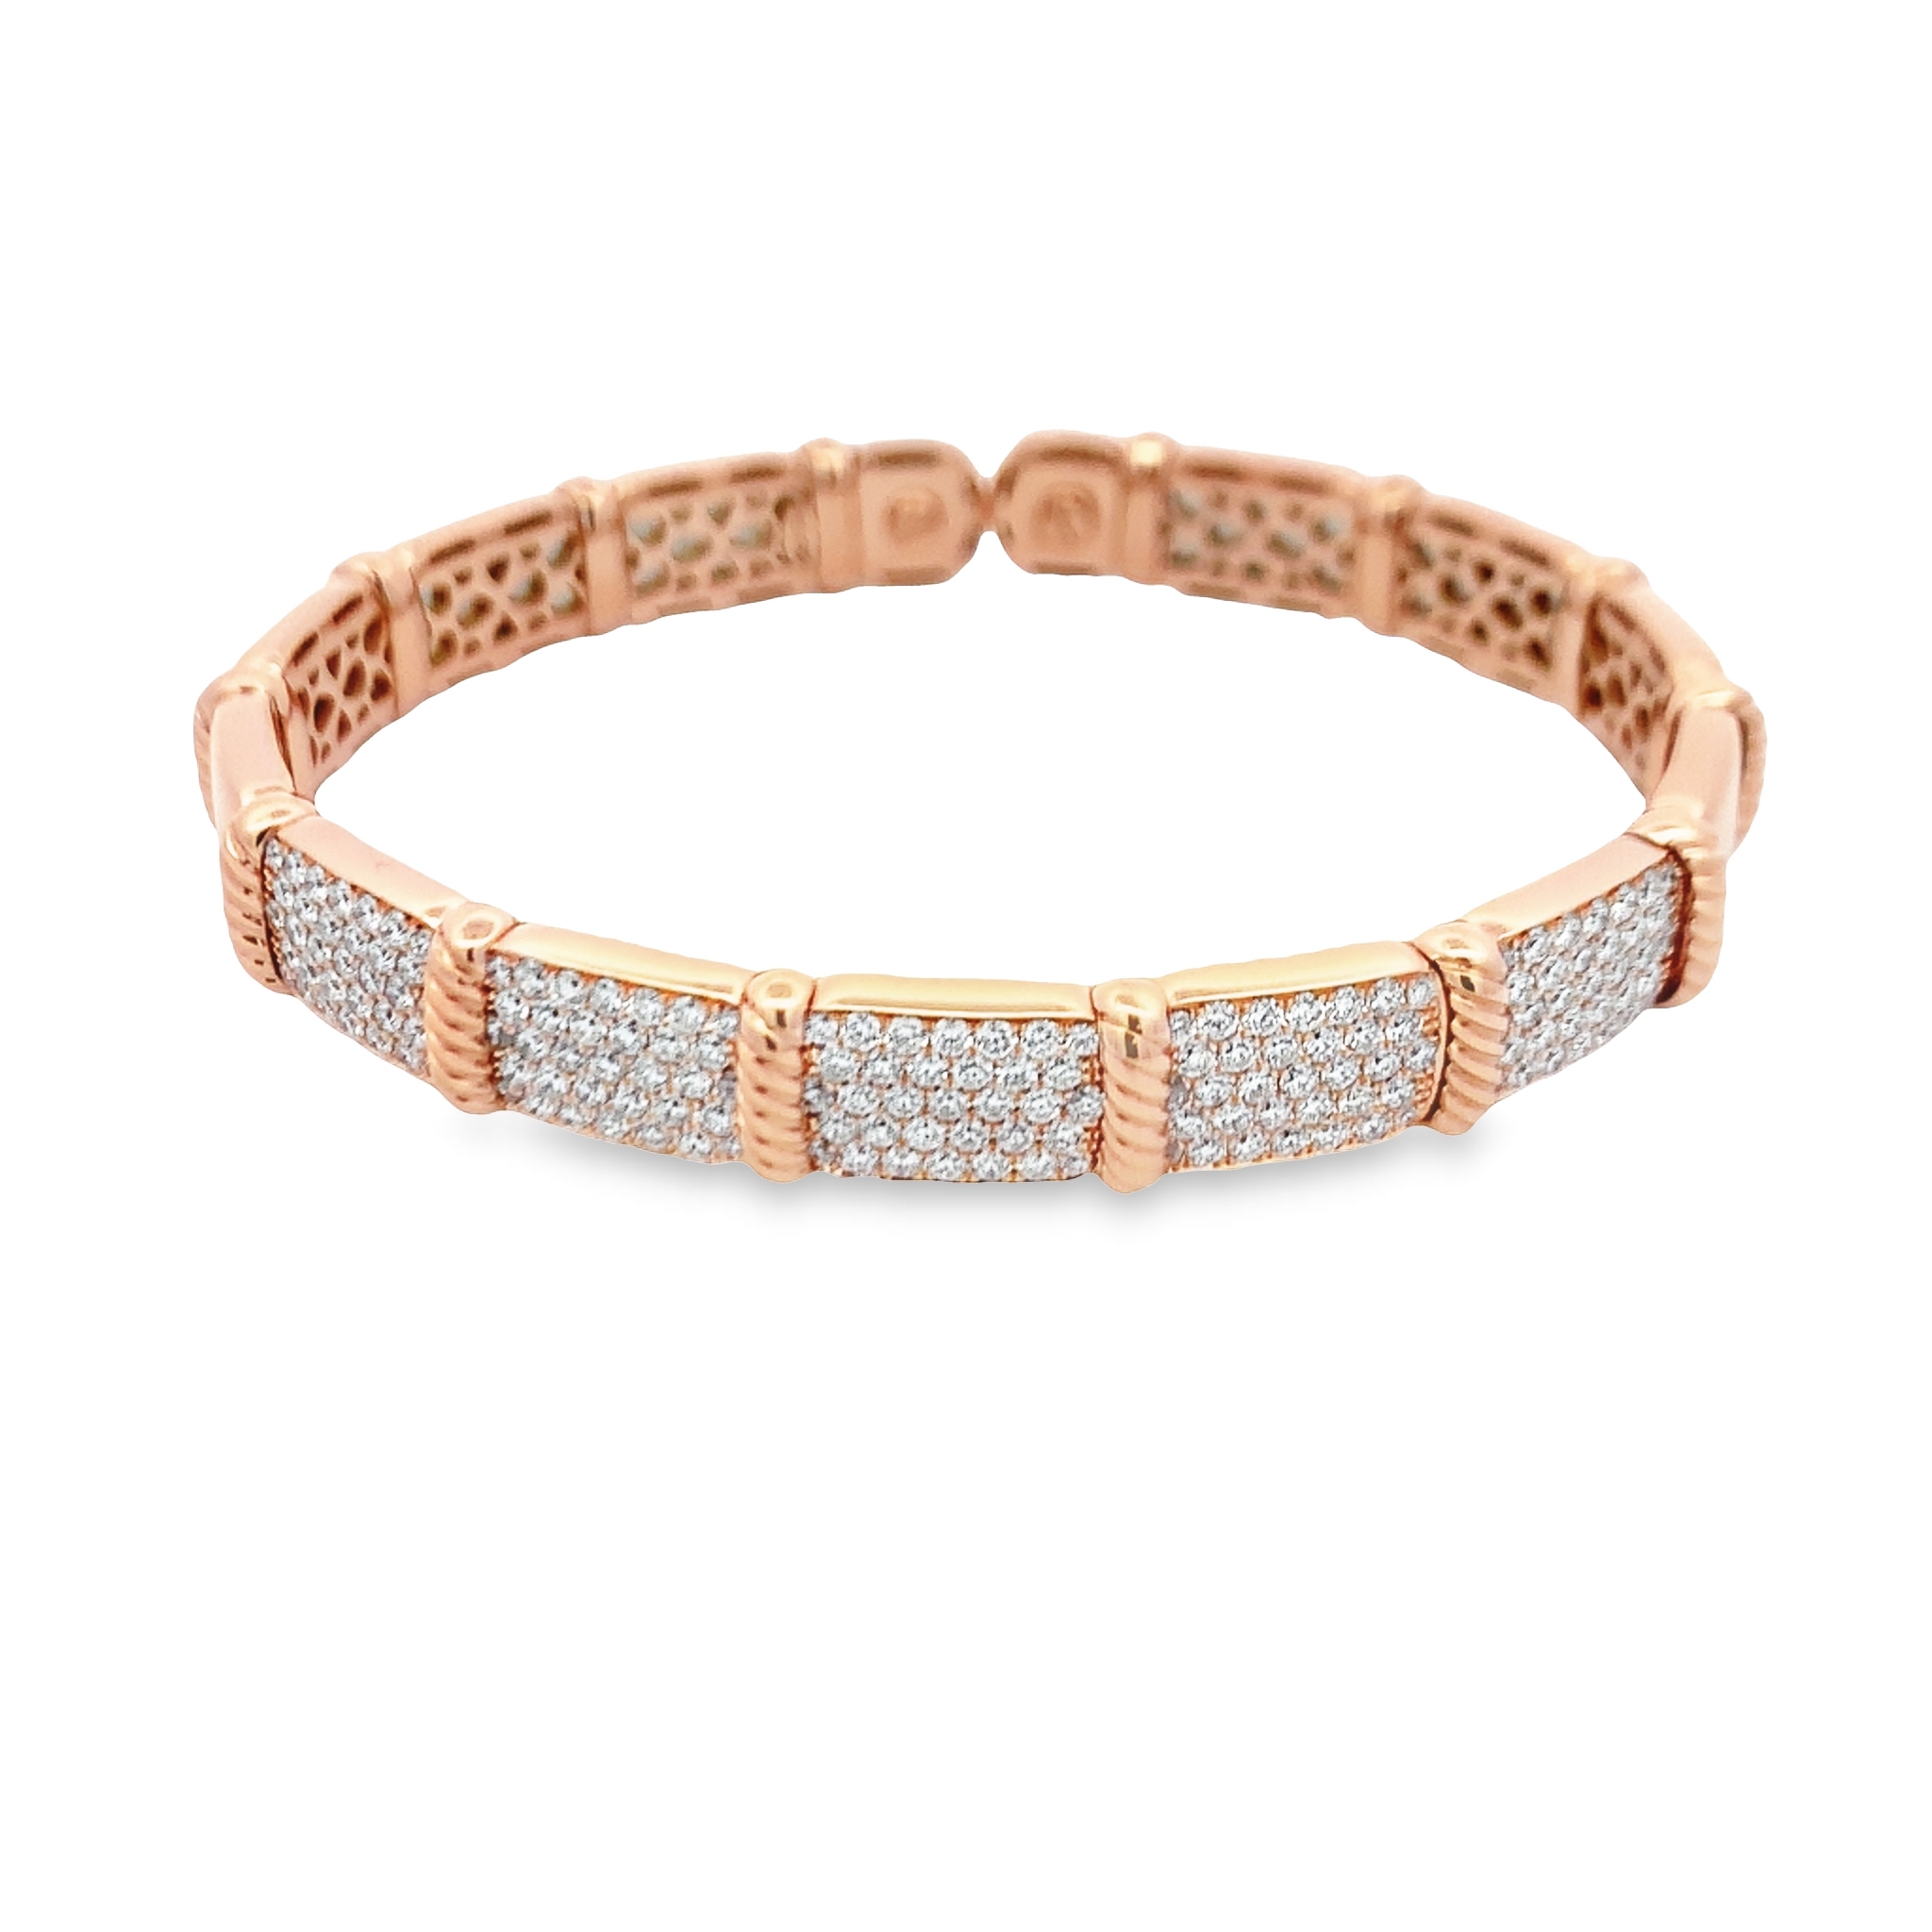 Damaso 18K Rosé Gold Diamond Link Bangle Bracelet